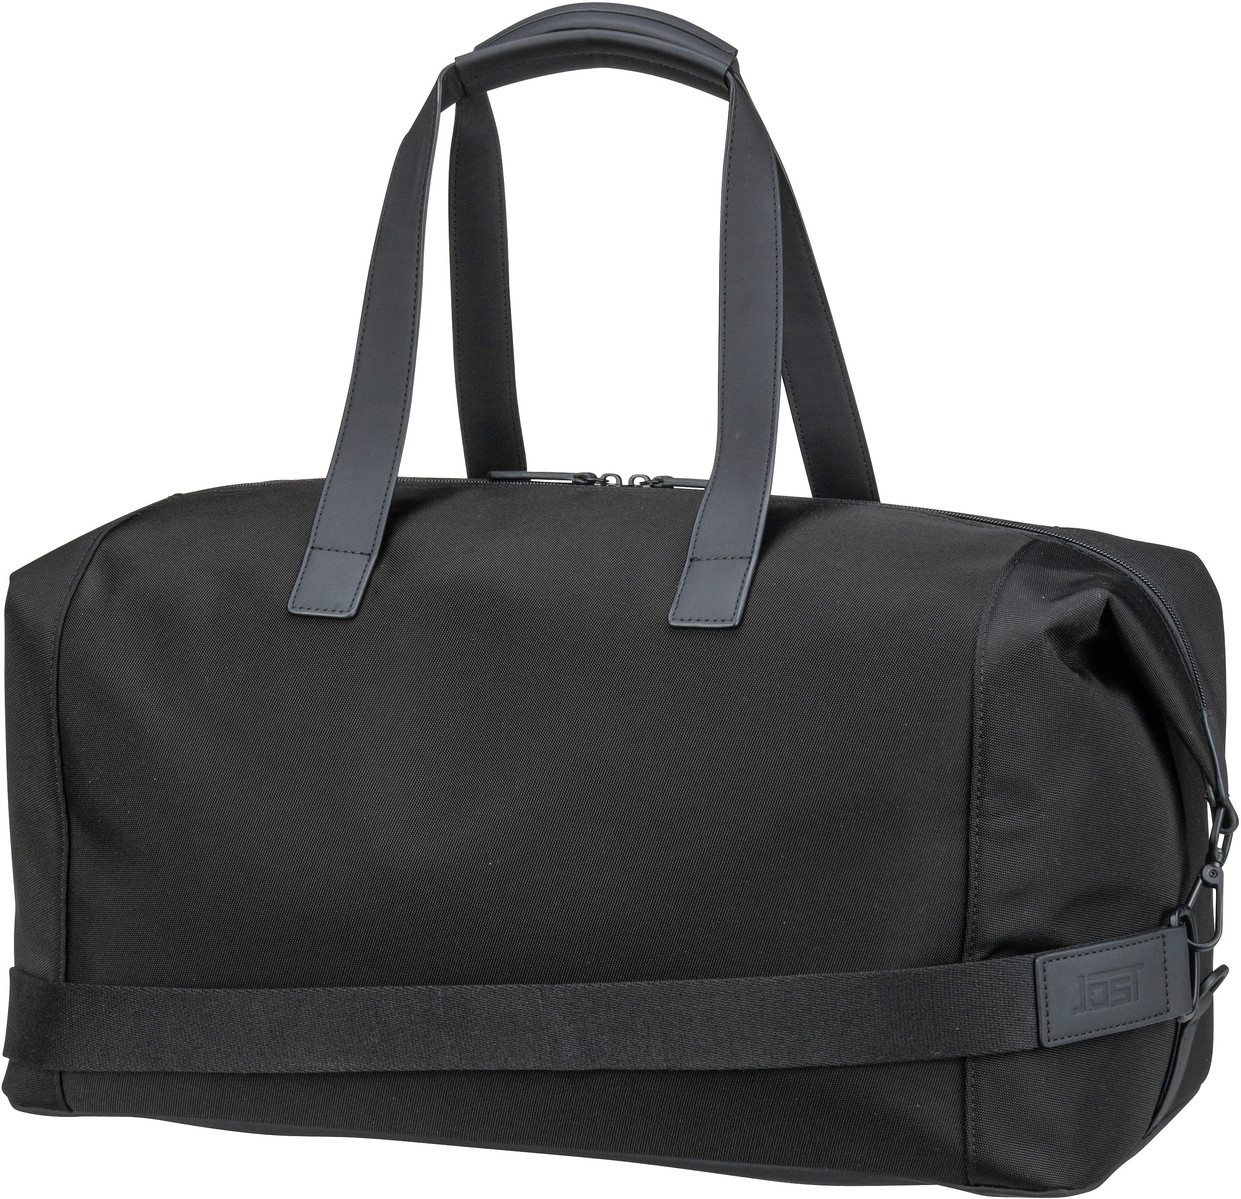 Jost Tallinn Travel Bag - Black